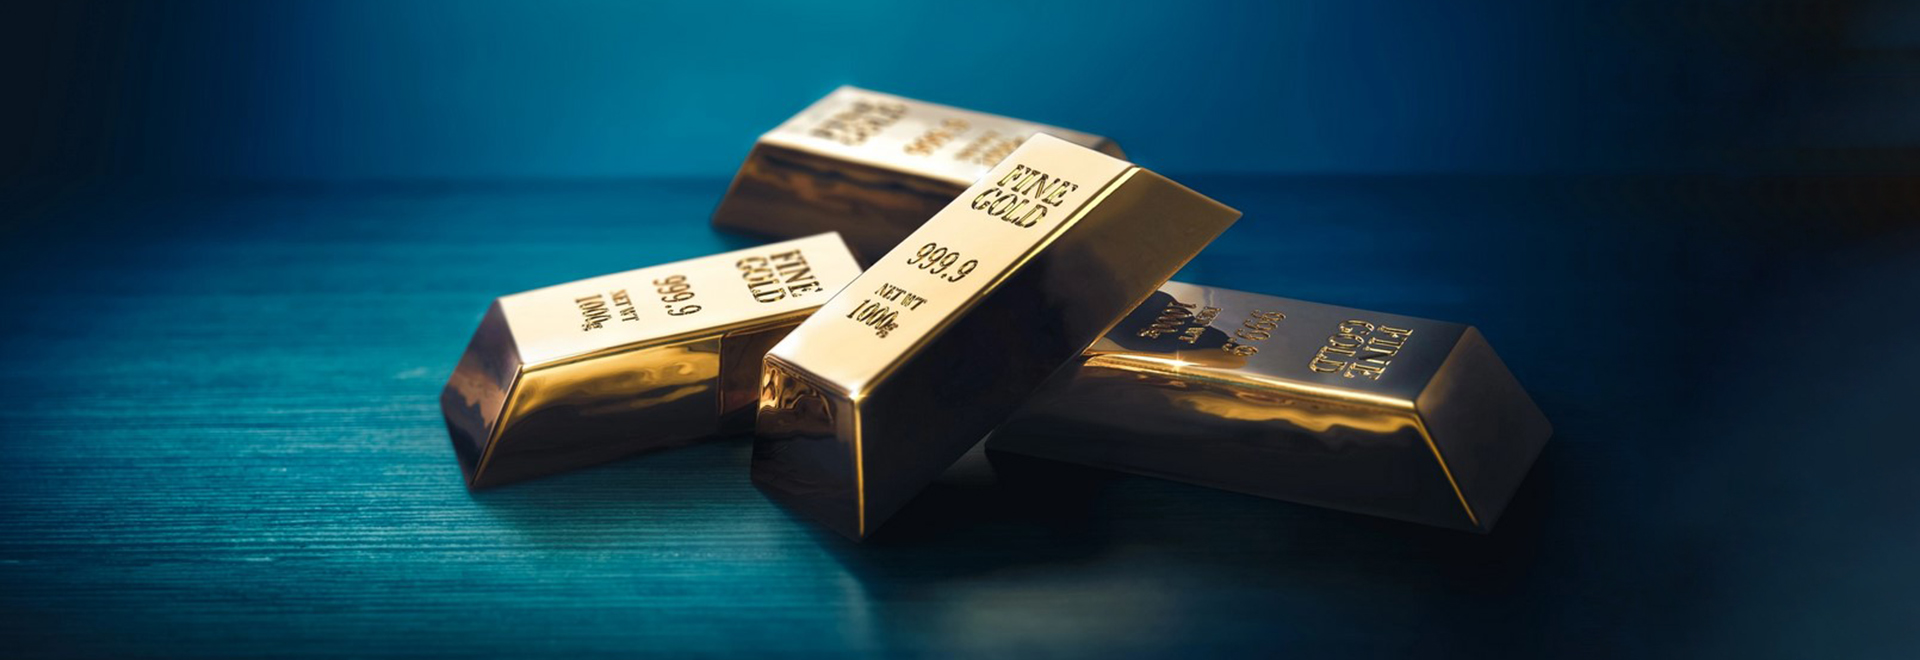 کارشناسان کاهش قیمت طلا در آستانه نشست فدرال رزرو آمریکا را پیش بینی میکنند